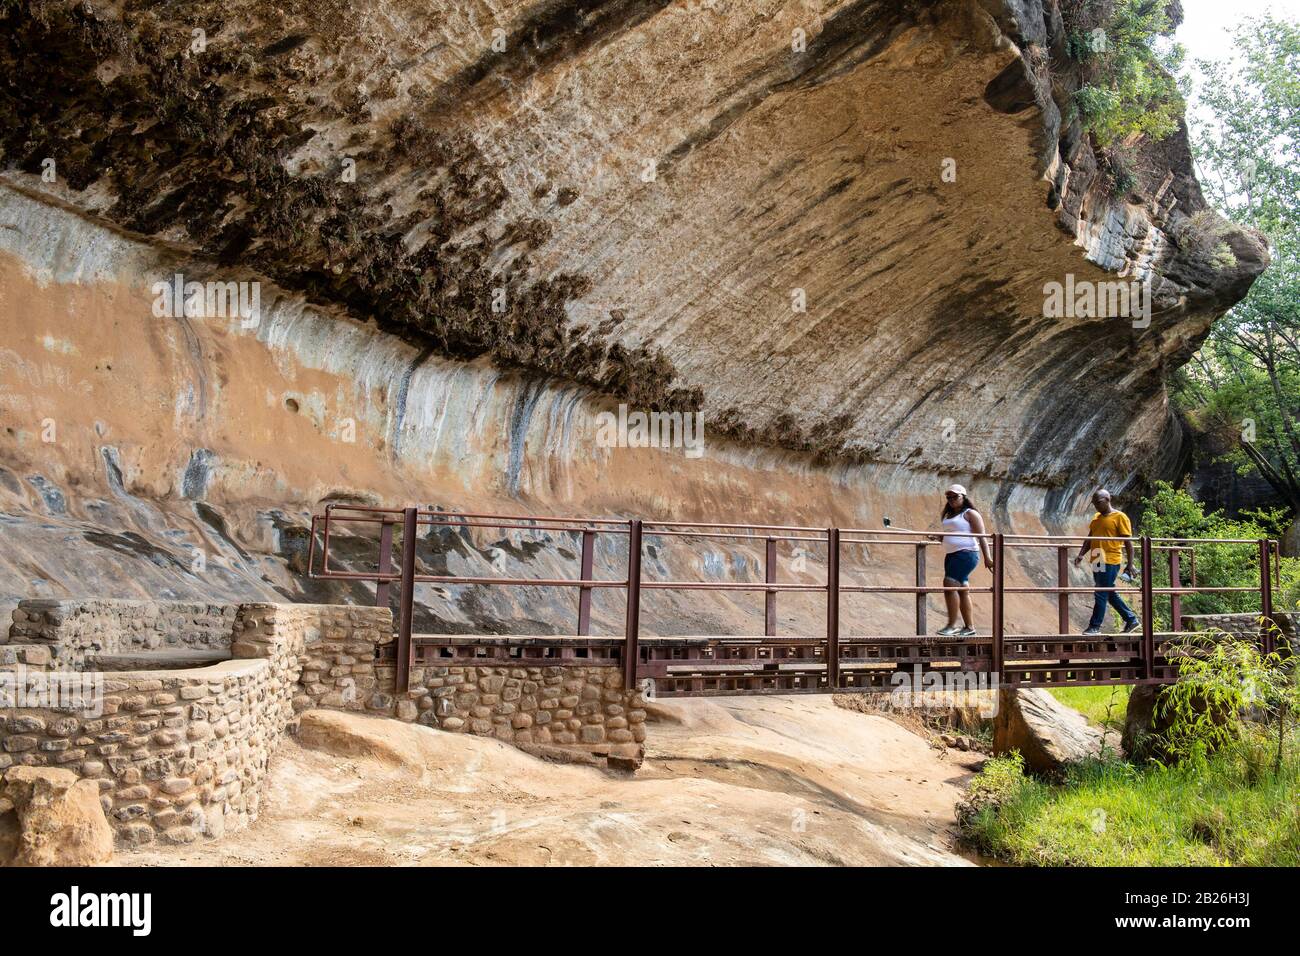 Gente cruzando un puente que entra en la cueva de Liphofung para ver arte rupestre, Lesotho Foto de stock